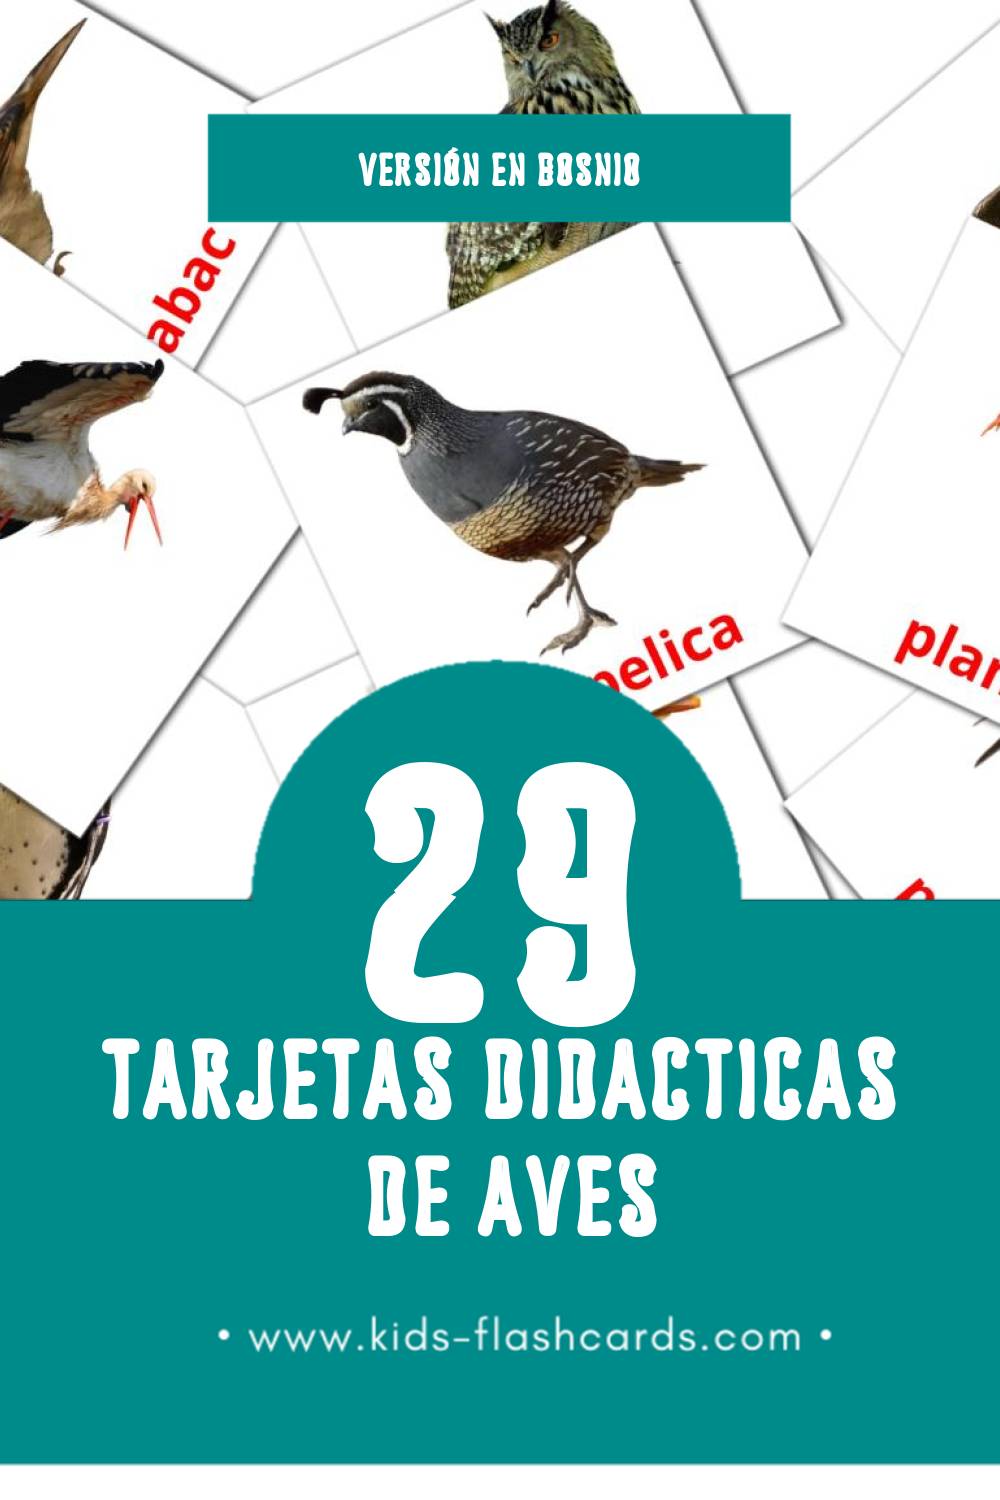 Tarjetas visuales de Ptice para niños pequeños (29 tarjetas en Bosnio)